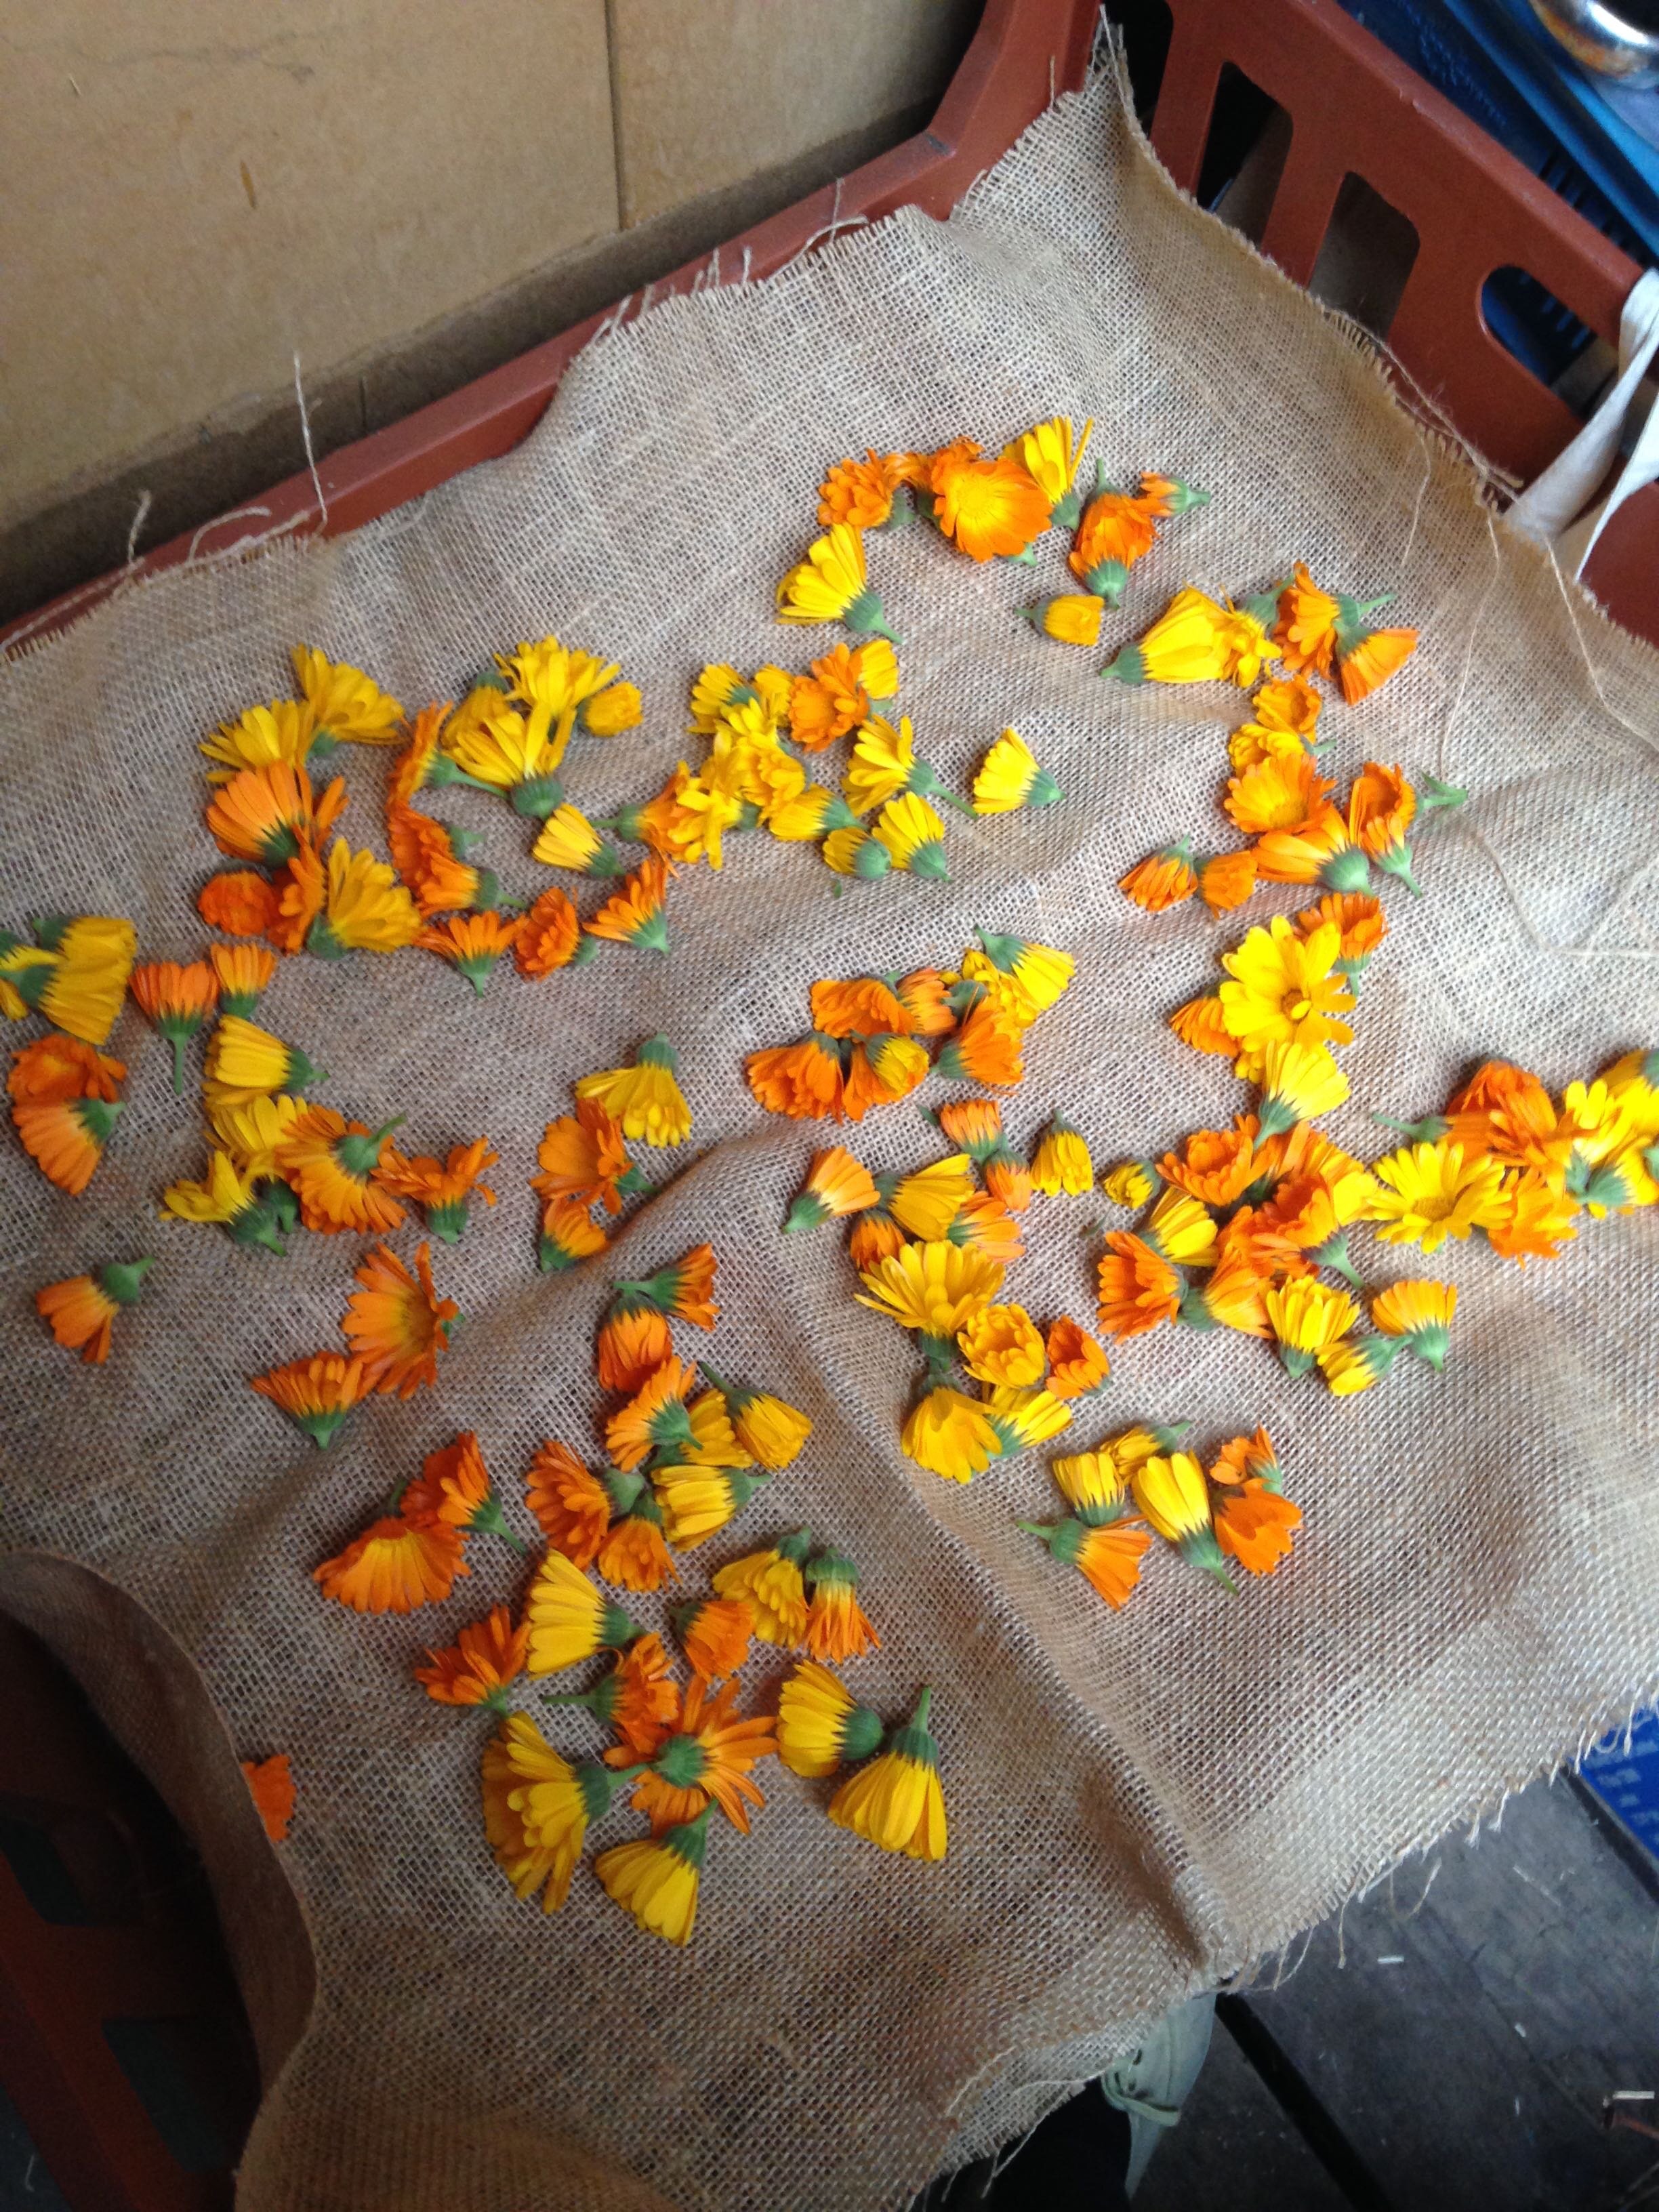 Marigolds drying rack.jpg